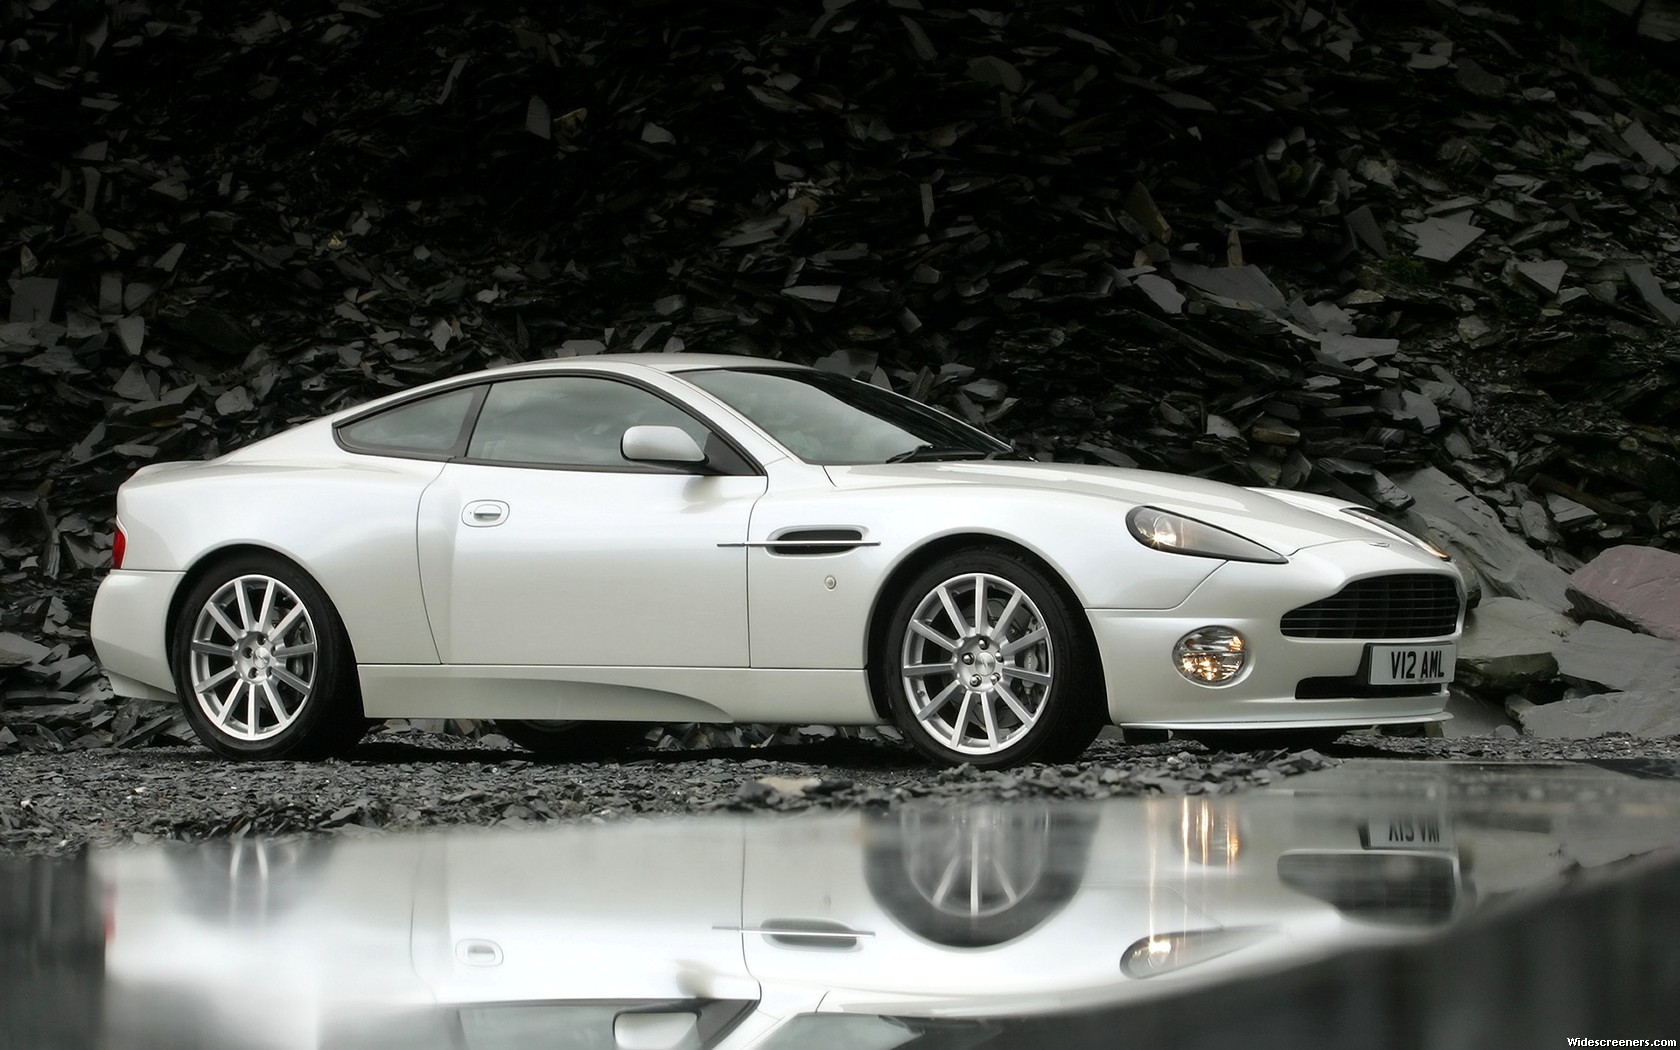 Descarga gratuita de fondo de pantalla para móvil de Aston Martin Vanquish, Aston Martin, Vehículos.